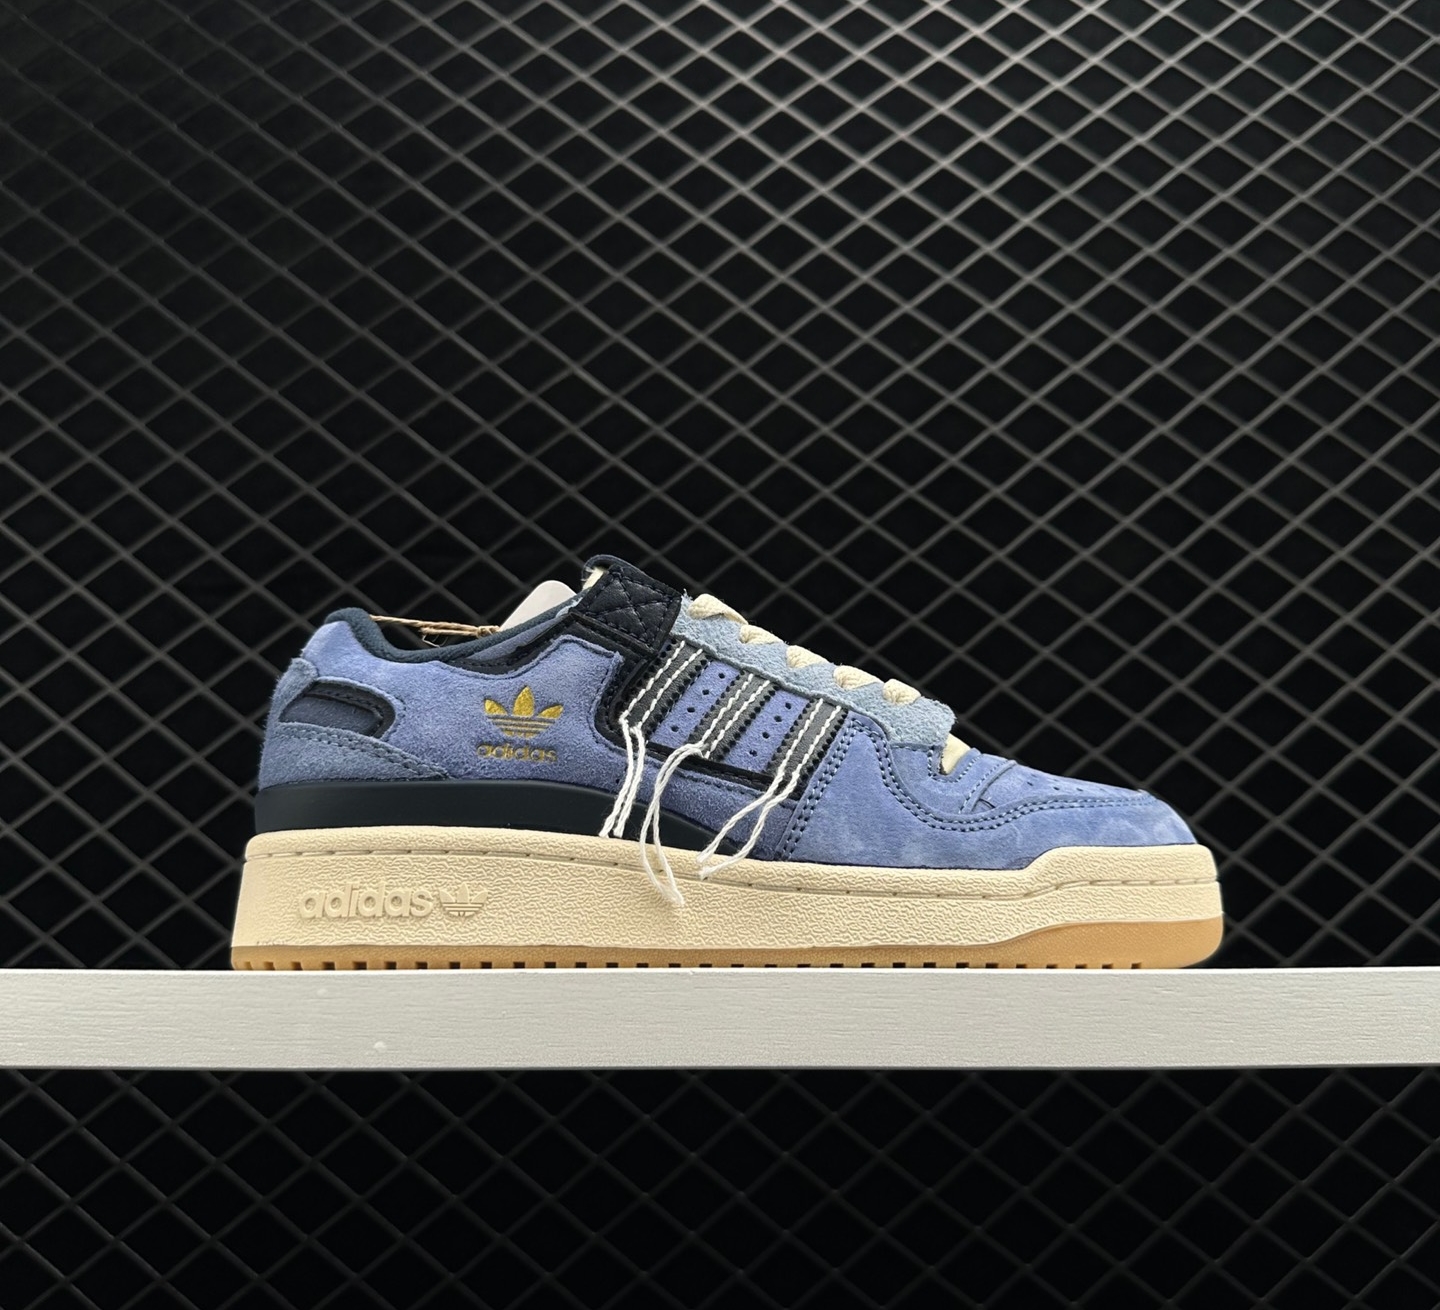 Adidas Originals Forum 84 Low Blue GW0298 - Classic Style and Superior Comfort